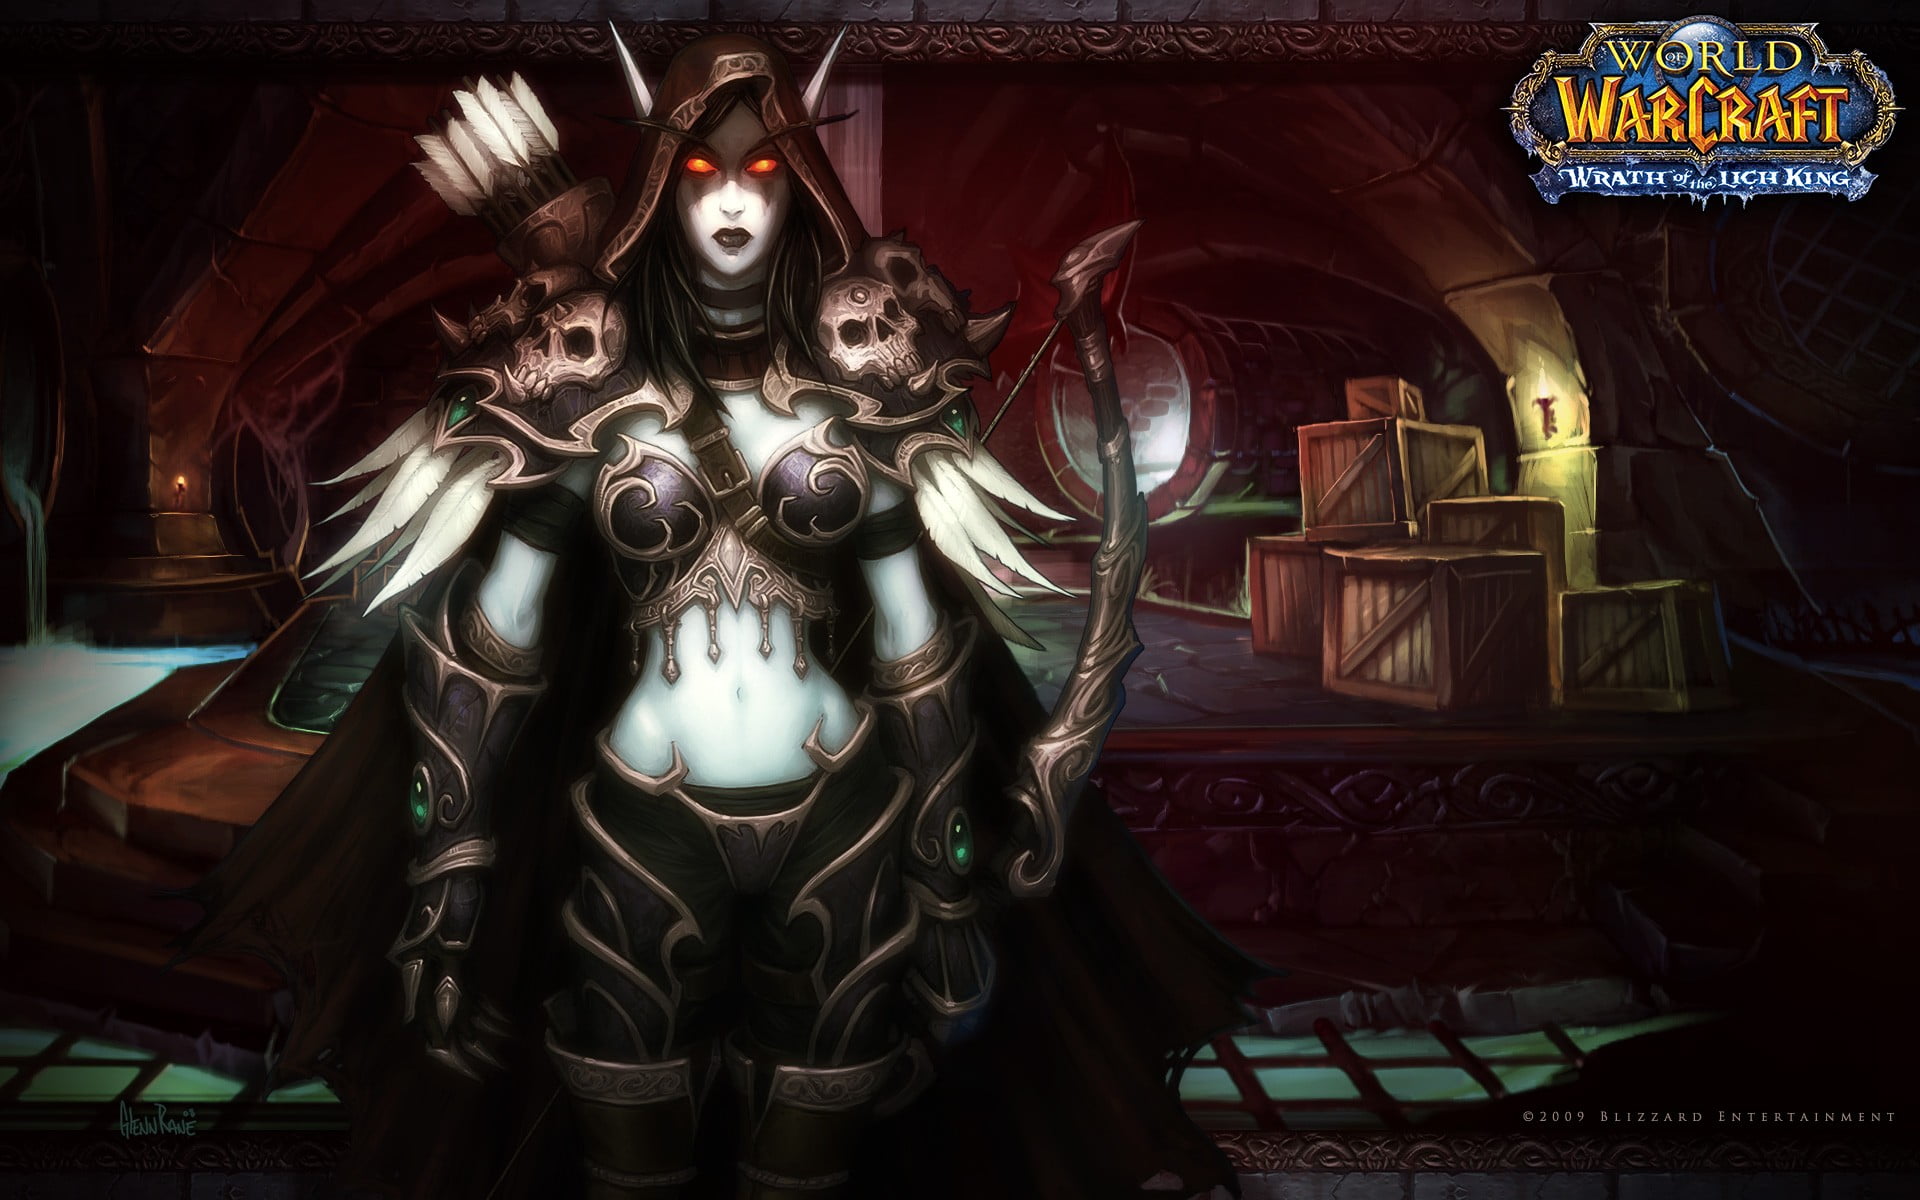 World of Warcraft Drow Ranger wallpaper, video games, digital art